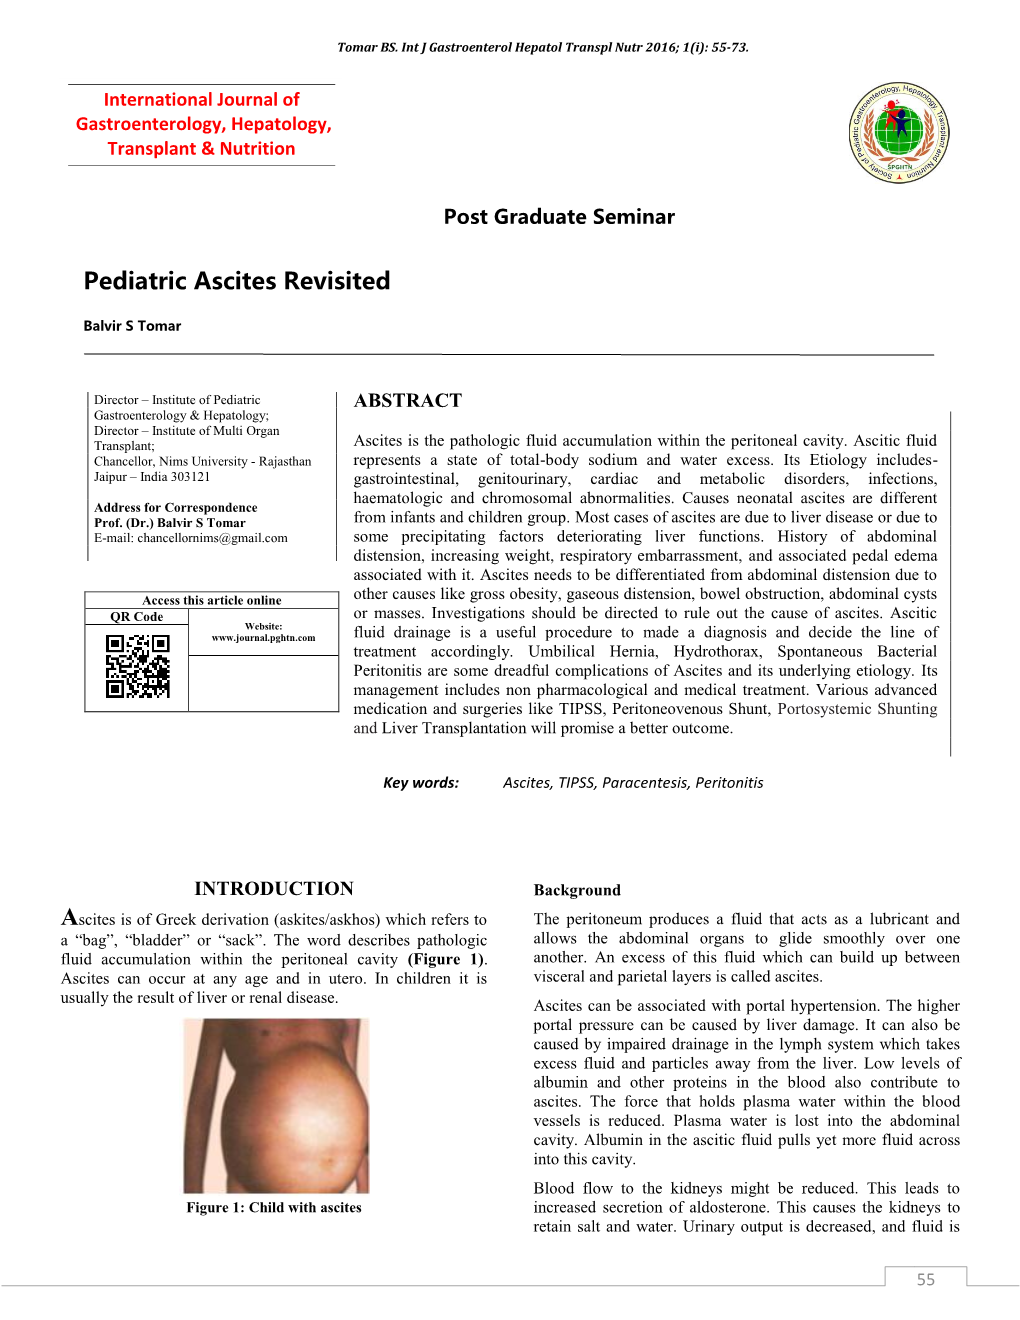 Pediatric Ascites Revisited